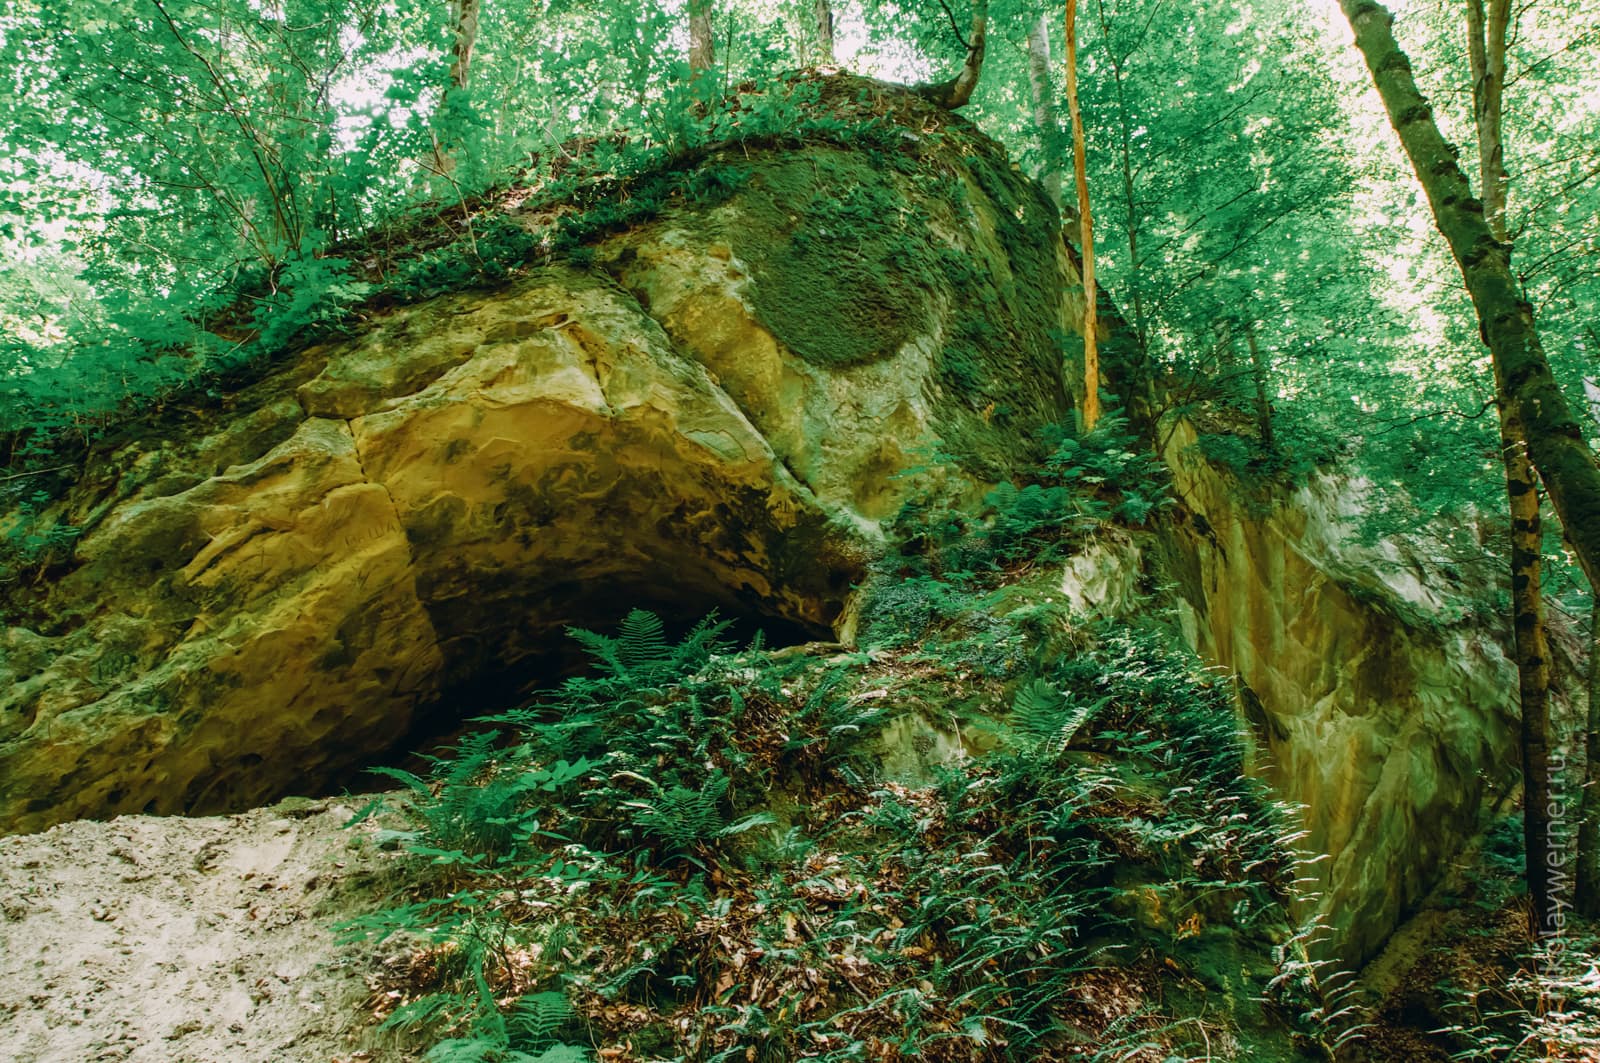 Треугольная скала из грязно-жёлто-зелёного песчаника с гротом и папоротниками в основании. Наверху плотной стеной стоит лес, чьи стволы обрезаны верхним краем кадра